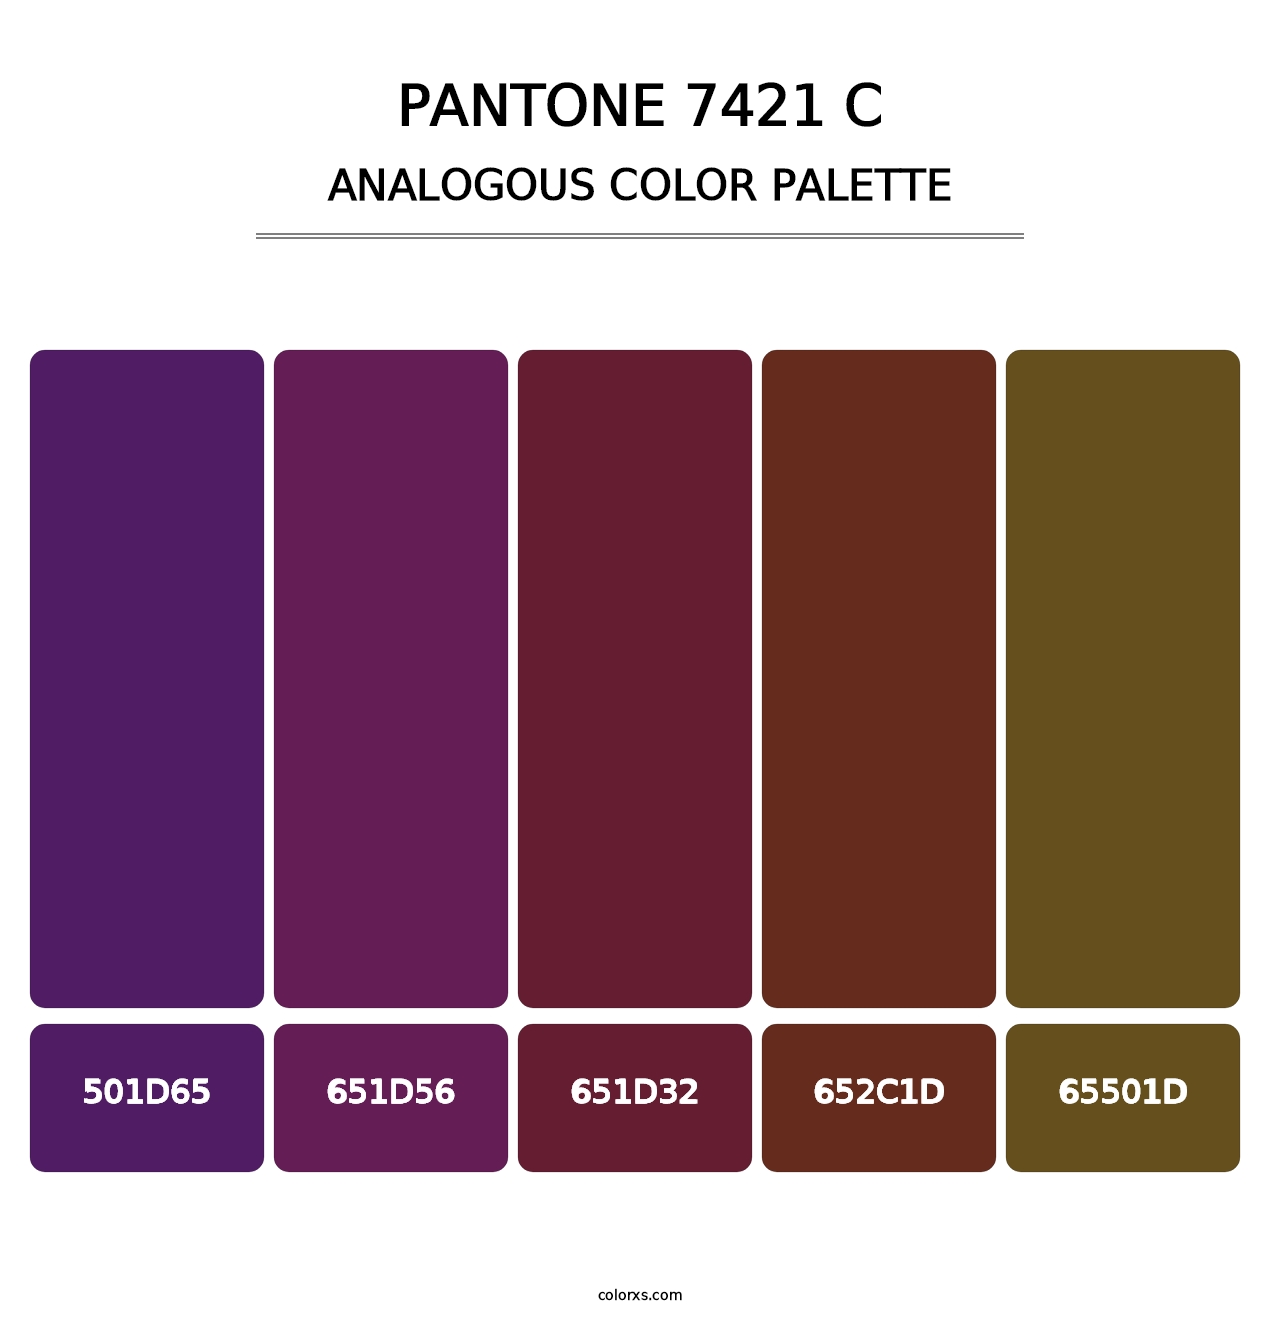 PANTONE 7421 C - Analogous Color Palette